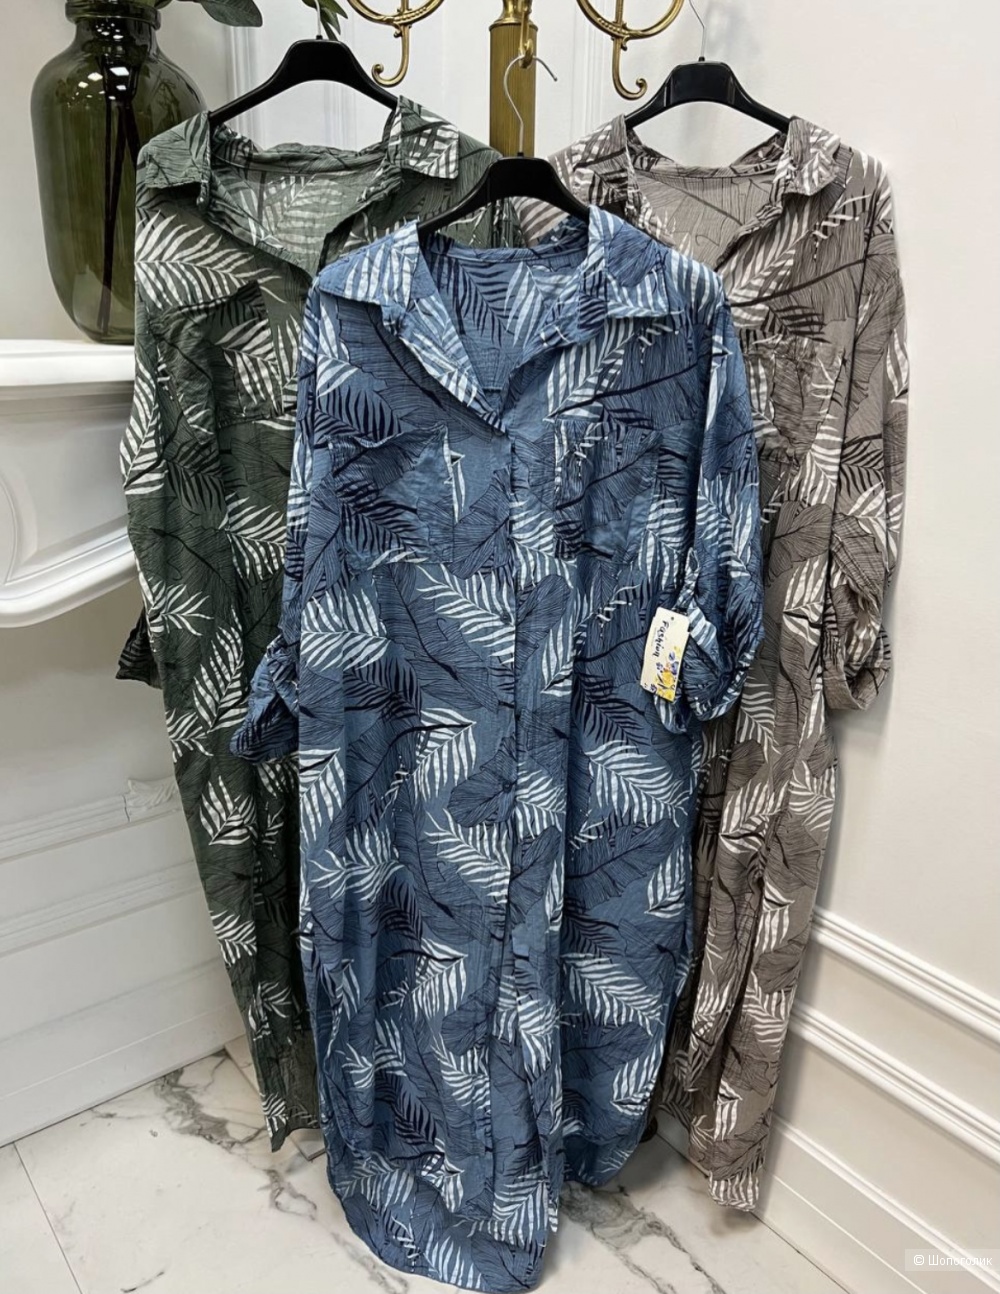 Платье туника Palm leaf new collection moda, one size